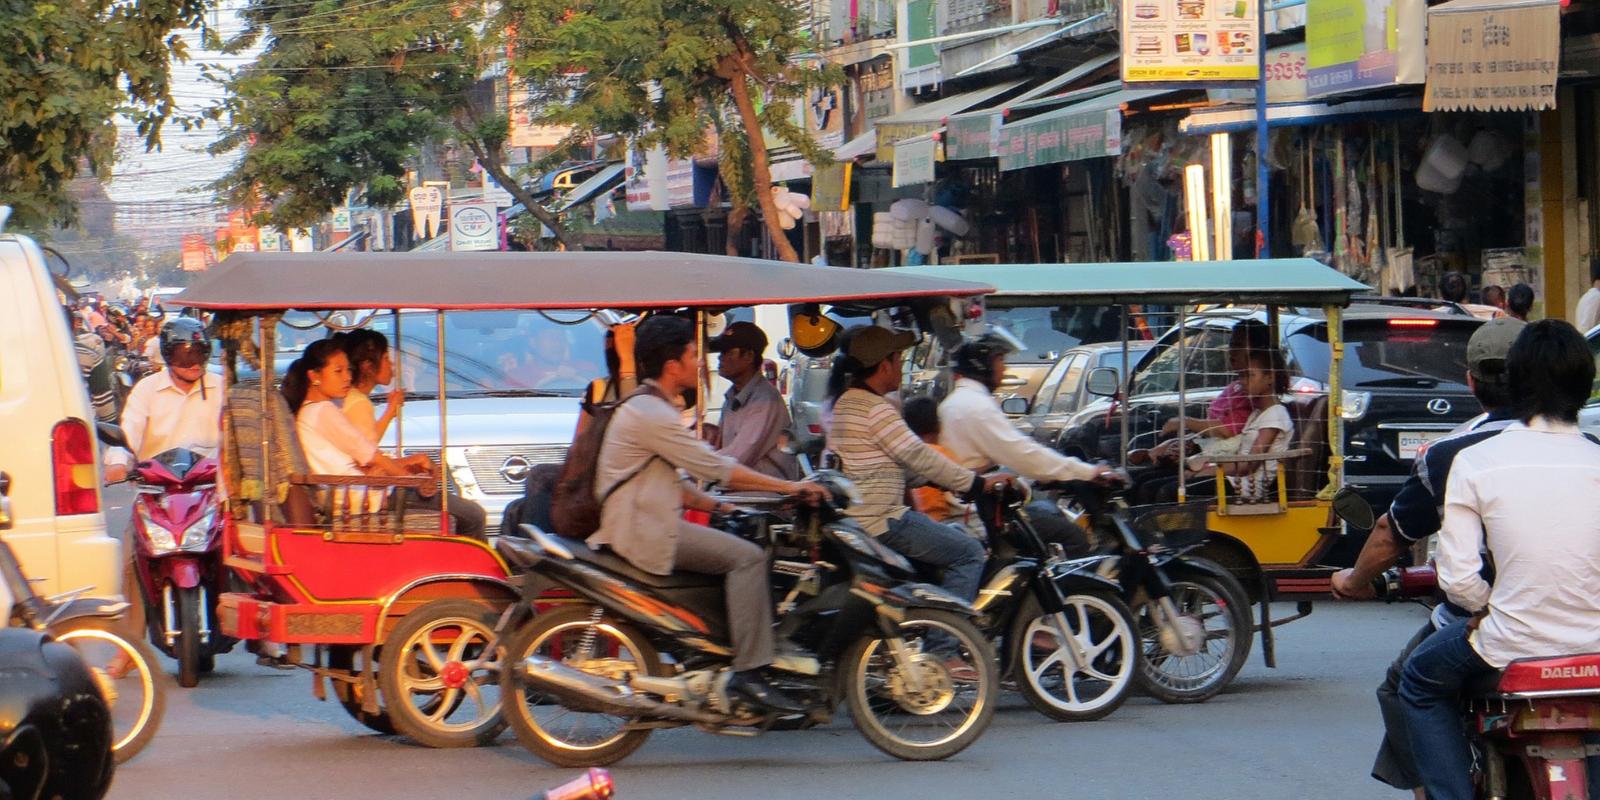 2014-10-12 Dominik in Kambodscha 27 Strasse in Phnon Penh